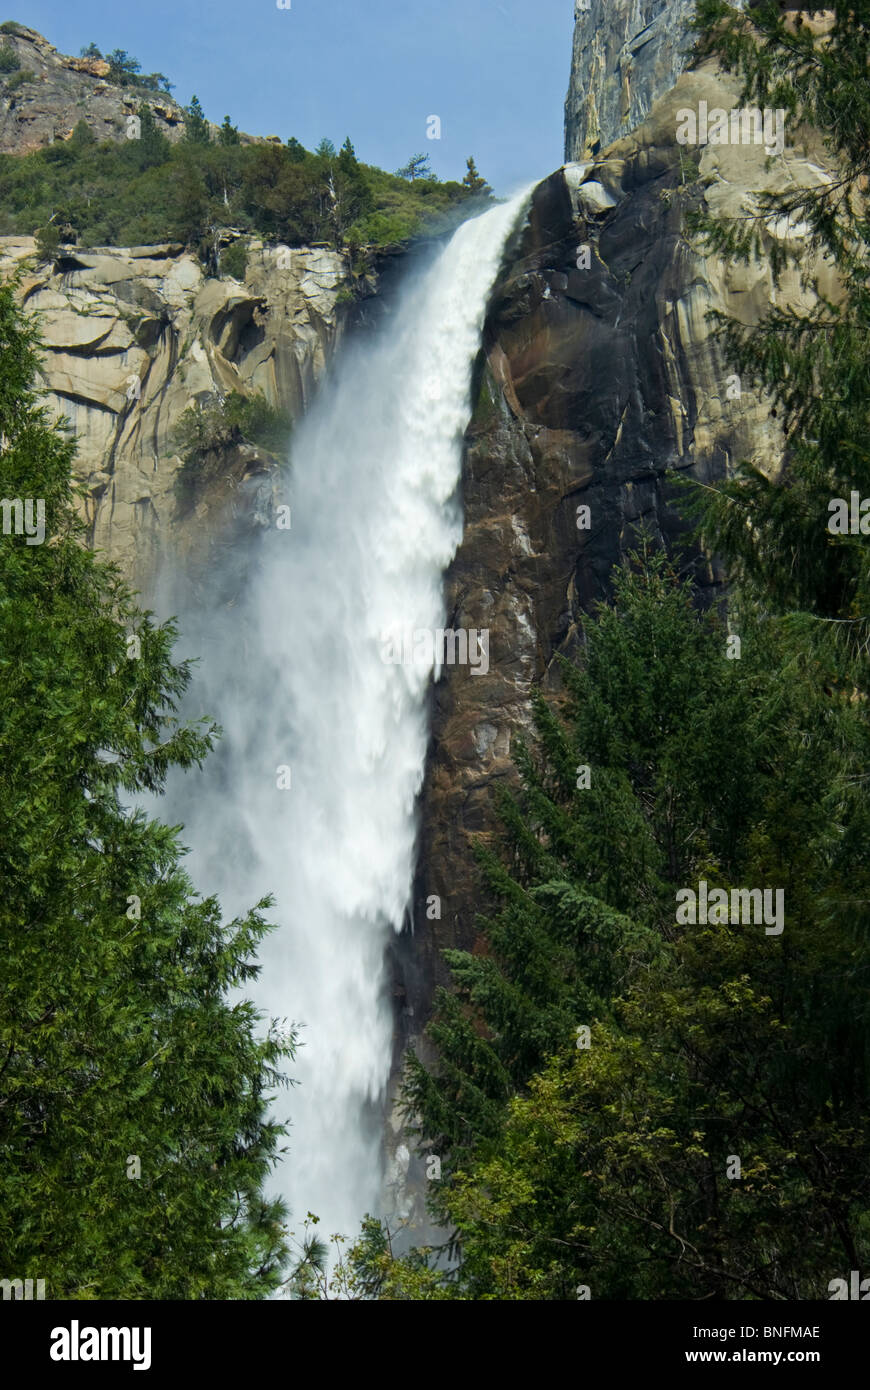 Yosemite National Park, Californie, Suite Nuptiale Vail tombe en panne vers le bas de la montagne dans les inondations du printemps Banque D'Images